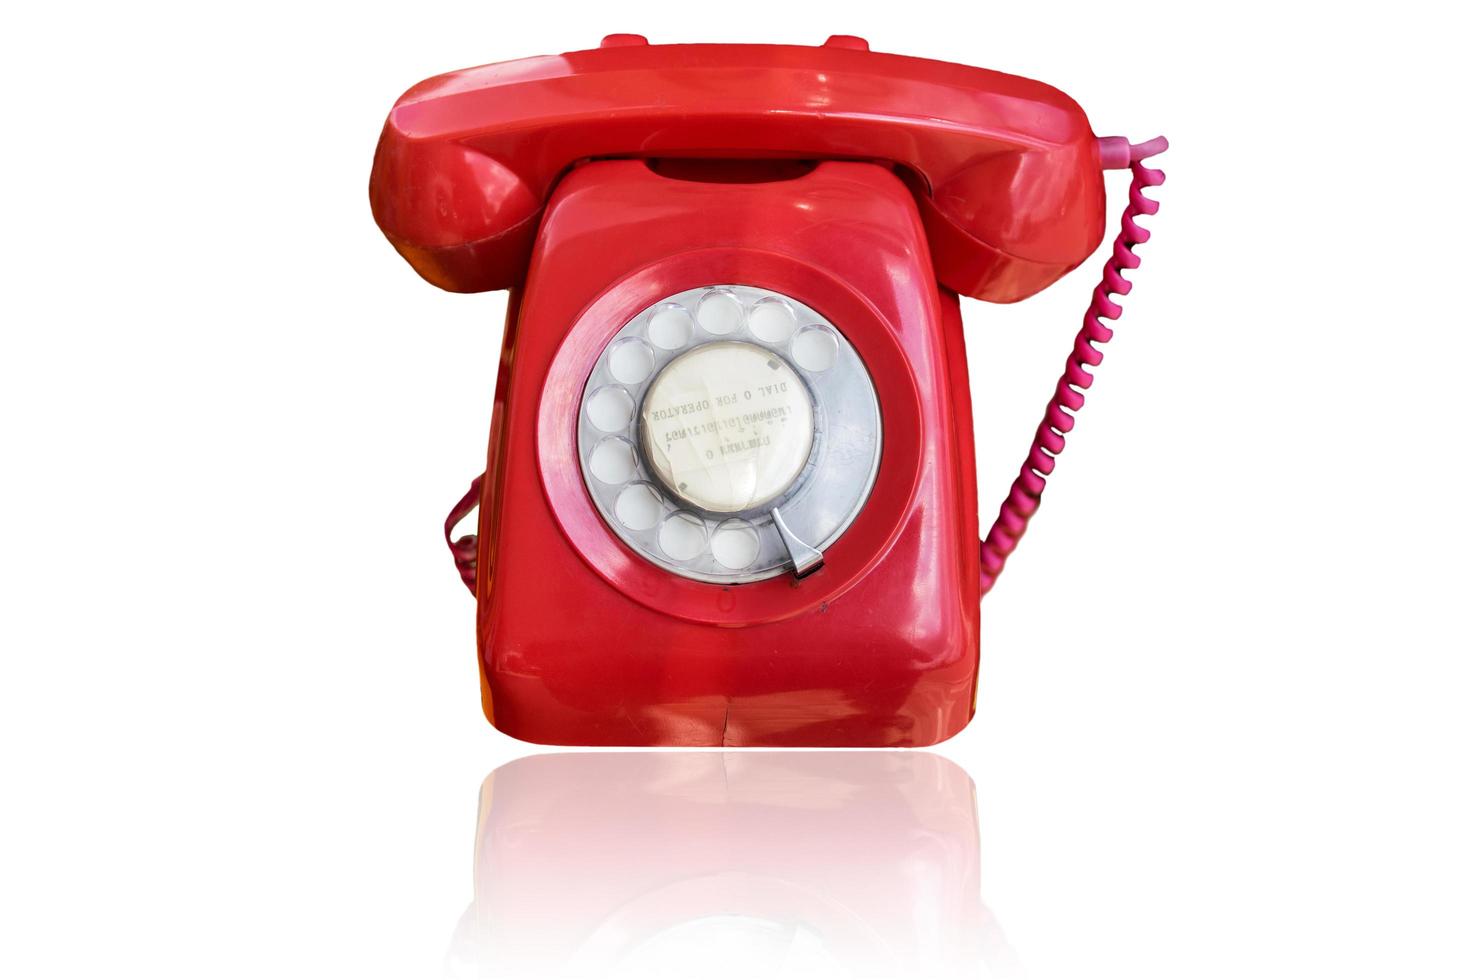 Antique Telephone on white background photo